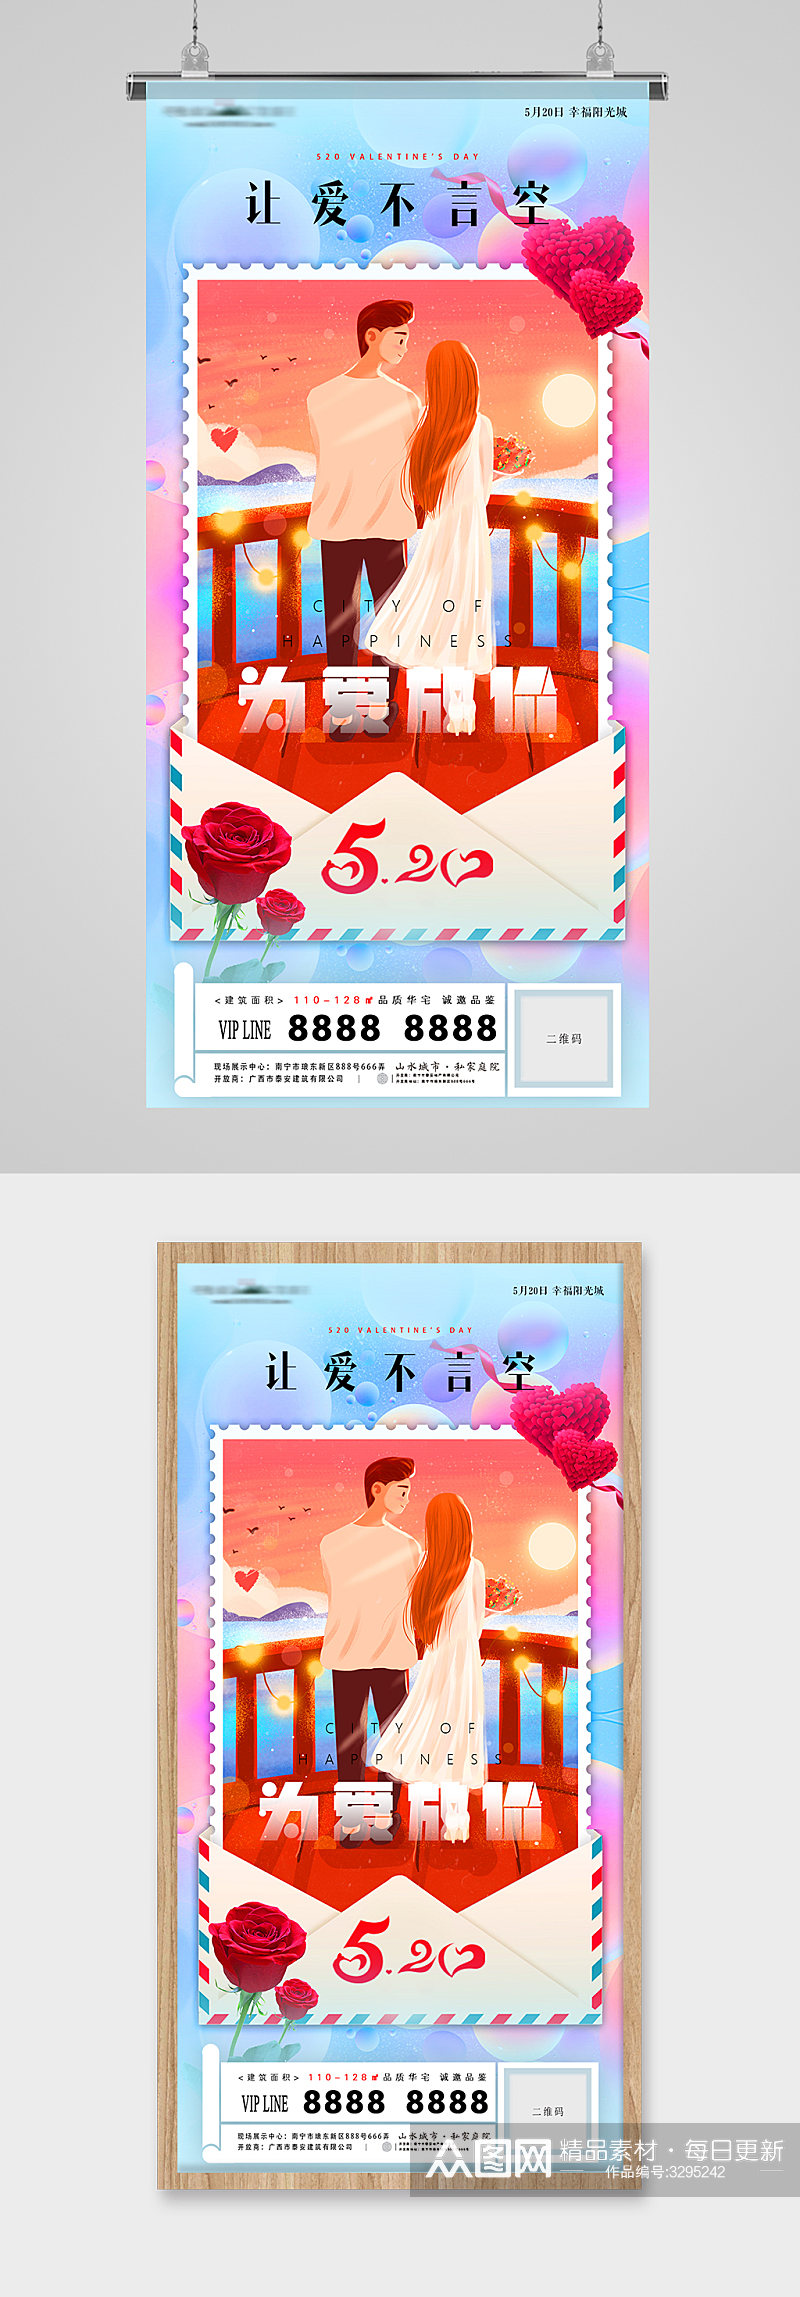 520表白日爱情甜蜜信封插画地产海报素材